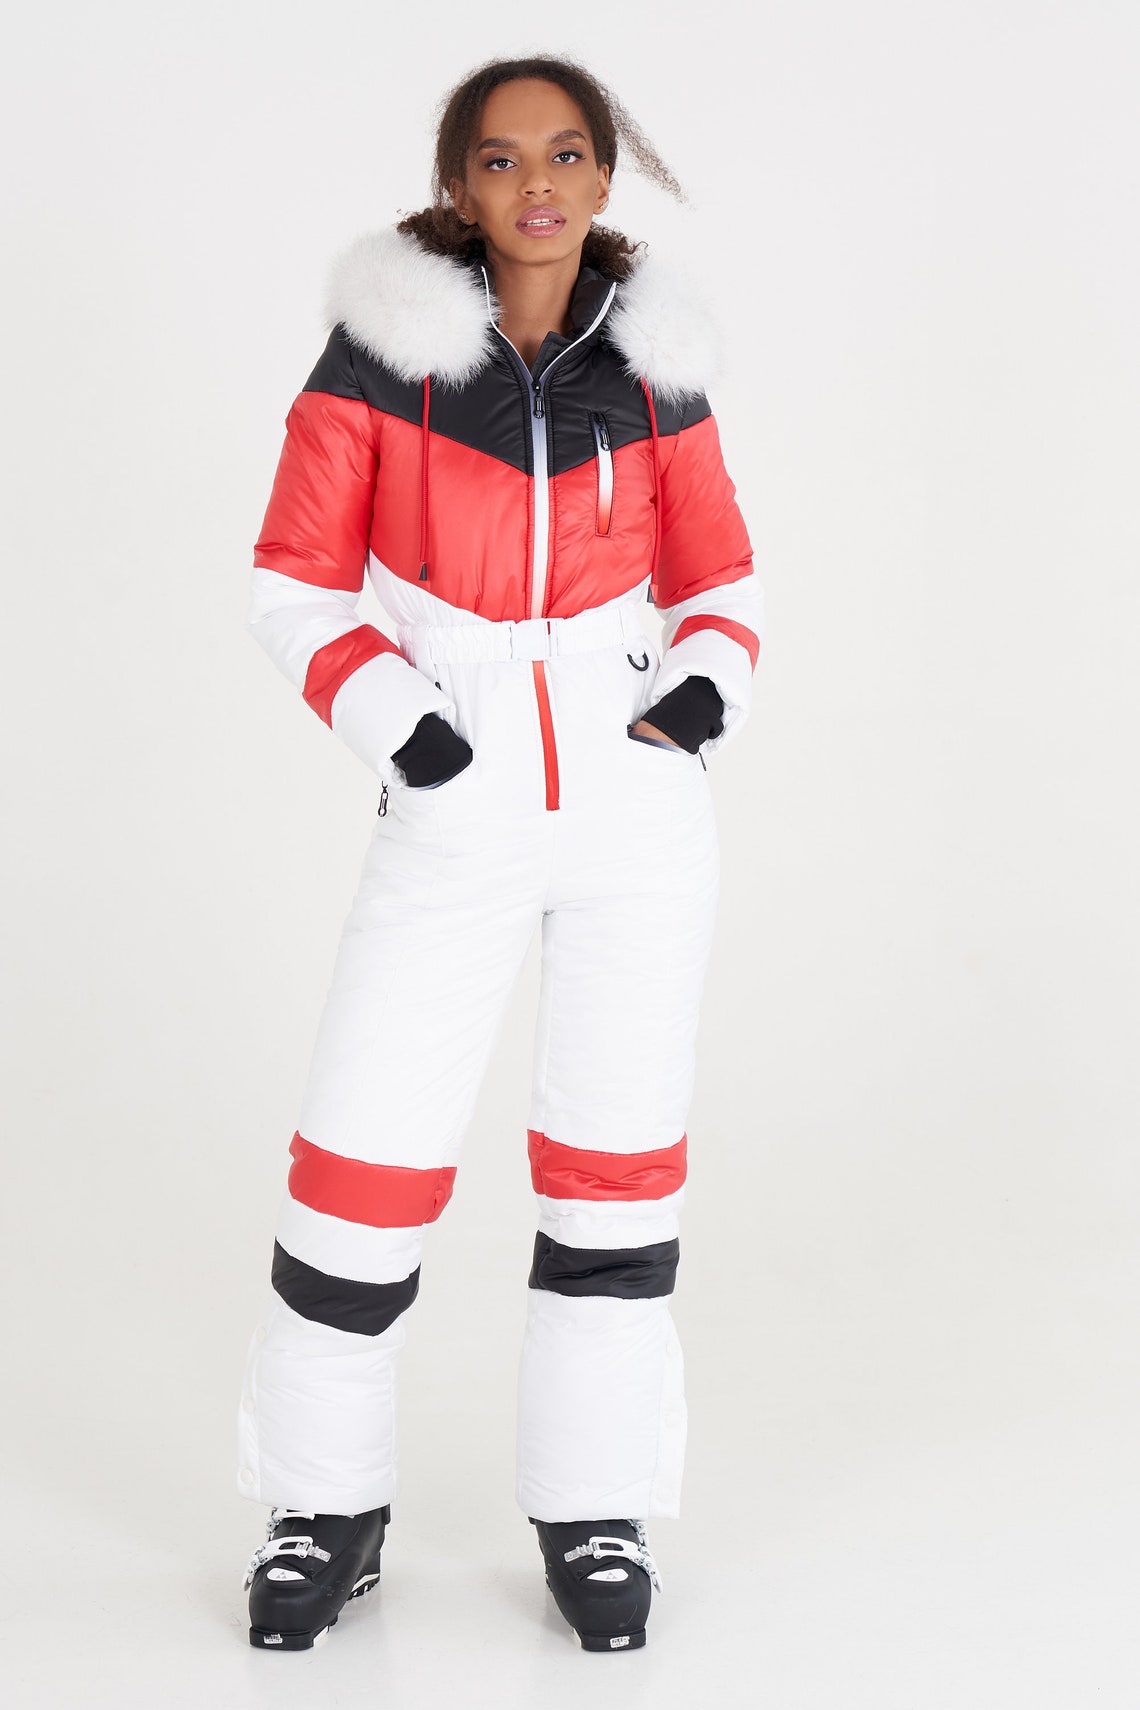 Womens Snowsuit White Womens Ski Suit Black Womens Ski Suit - Etsy